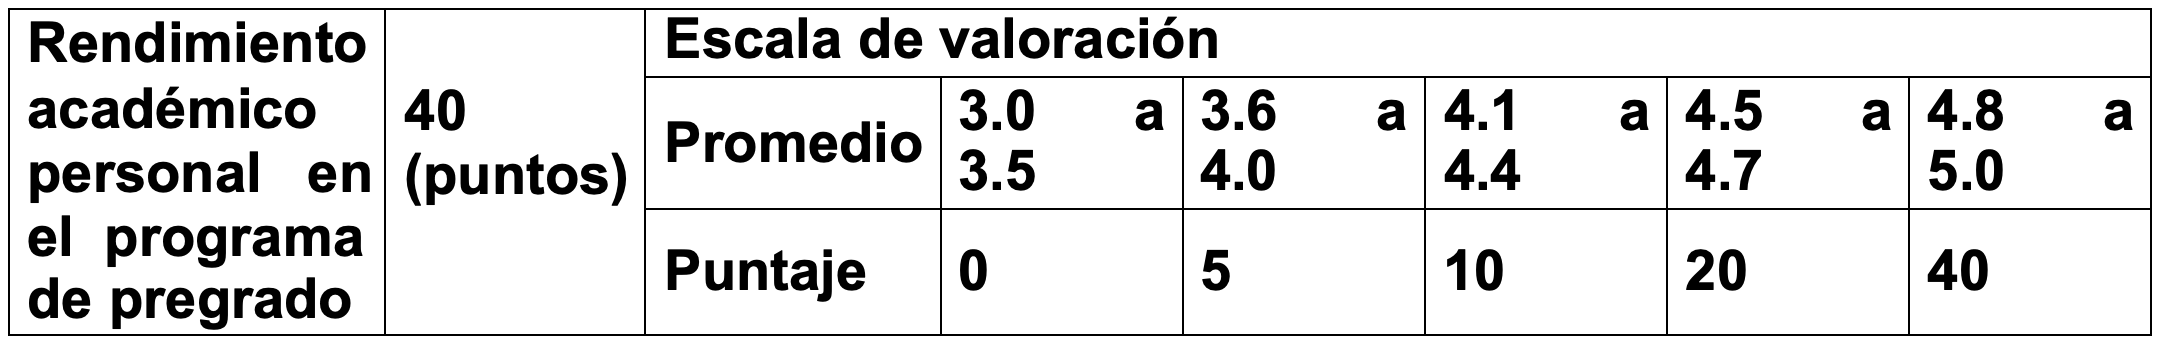 escala-de-valoracion_tabla